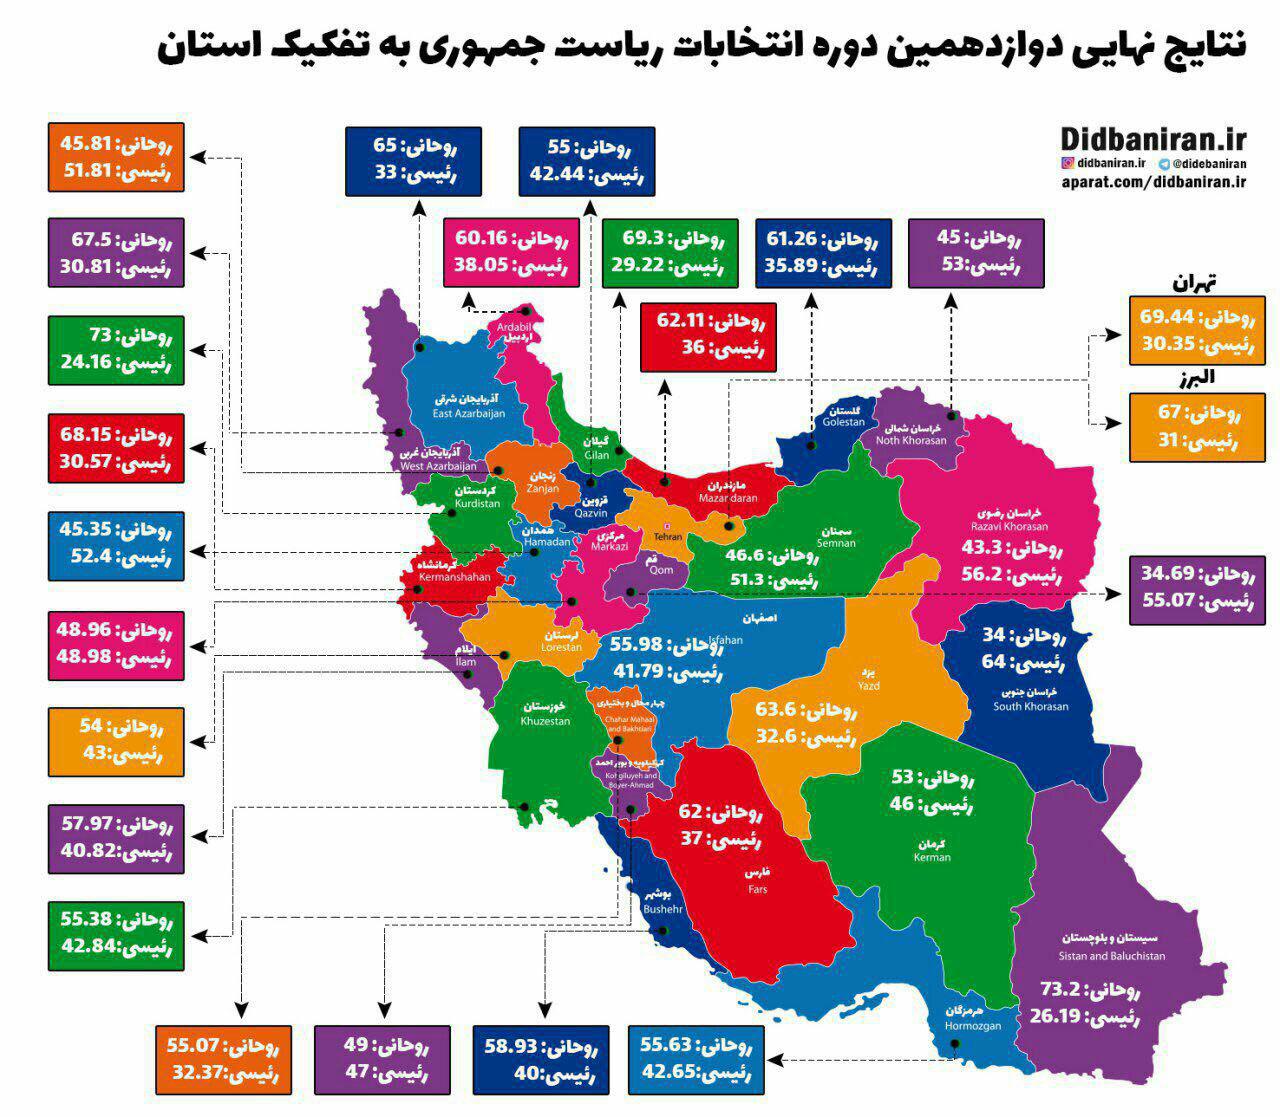 نتایج انتخابات ریاست جمهوری به تفکیک استان بر اساس آمار رسمی وزارت کشور